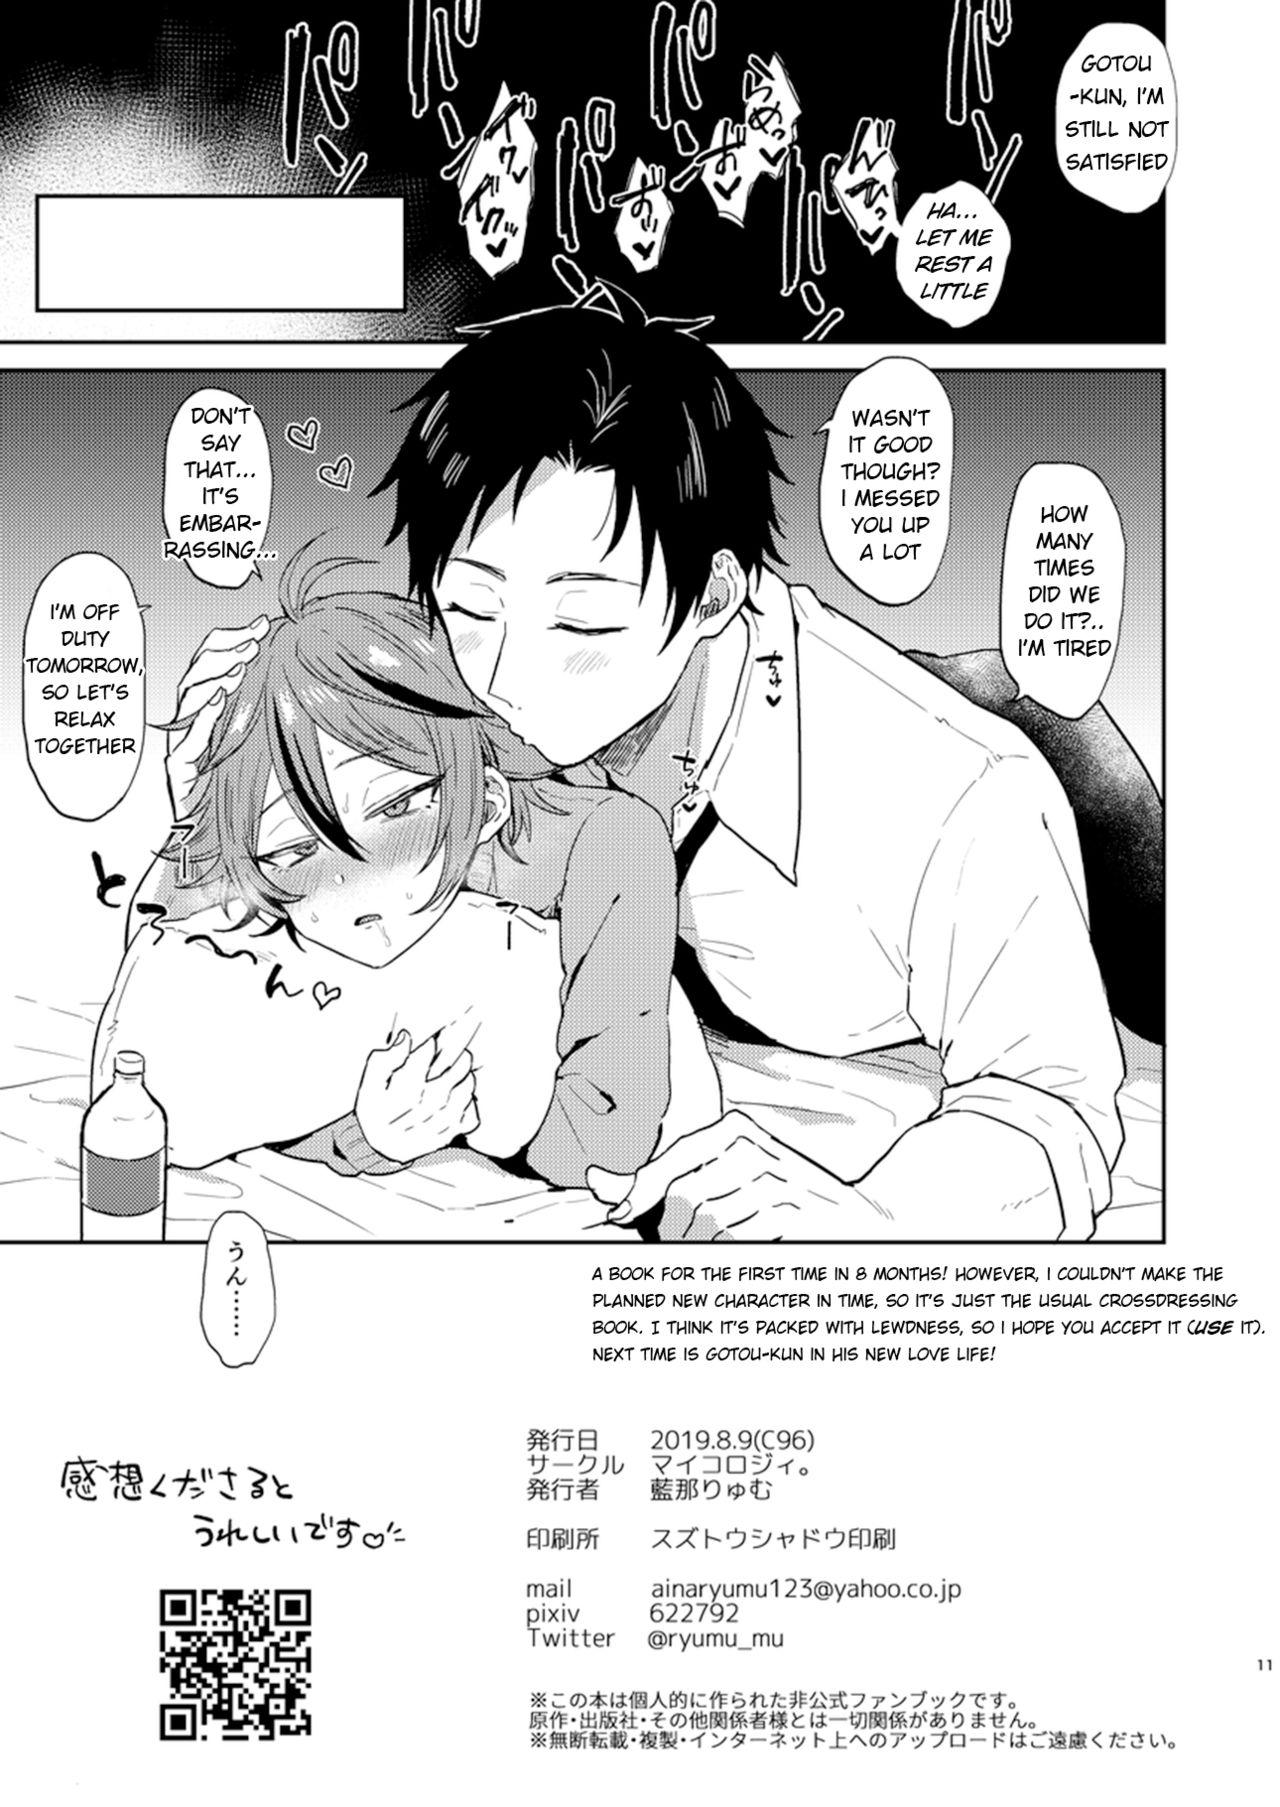 Titten Kawaii wa Seifuku de Tsukureru 2 - Touken ranbu Erotic - Page 11